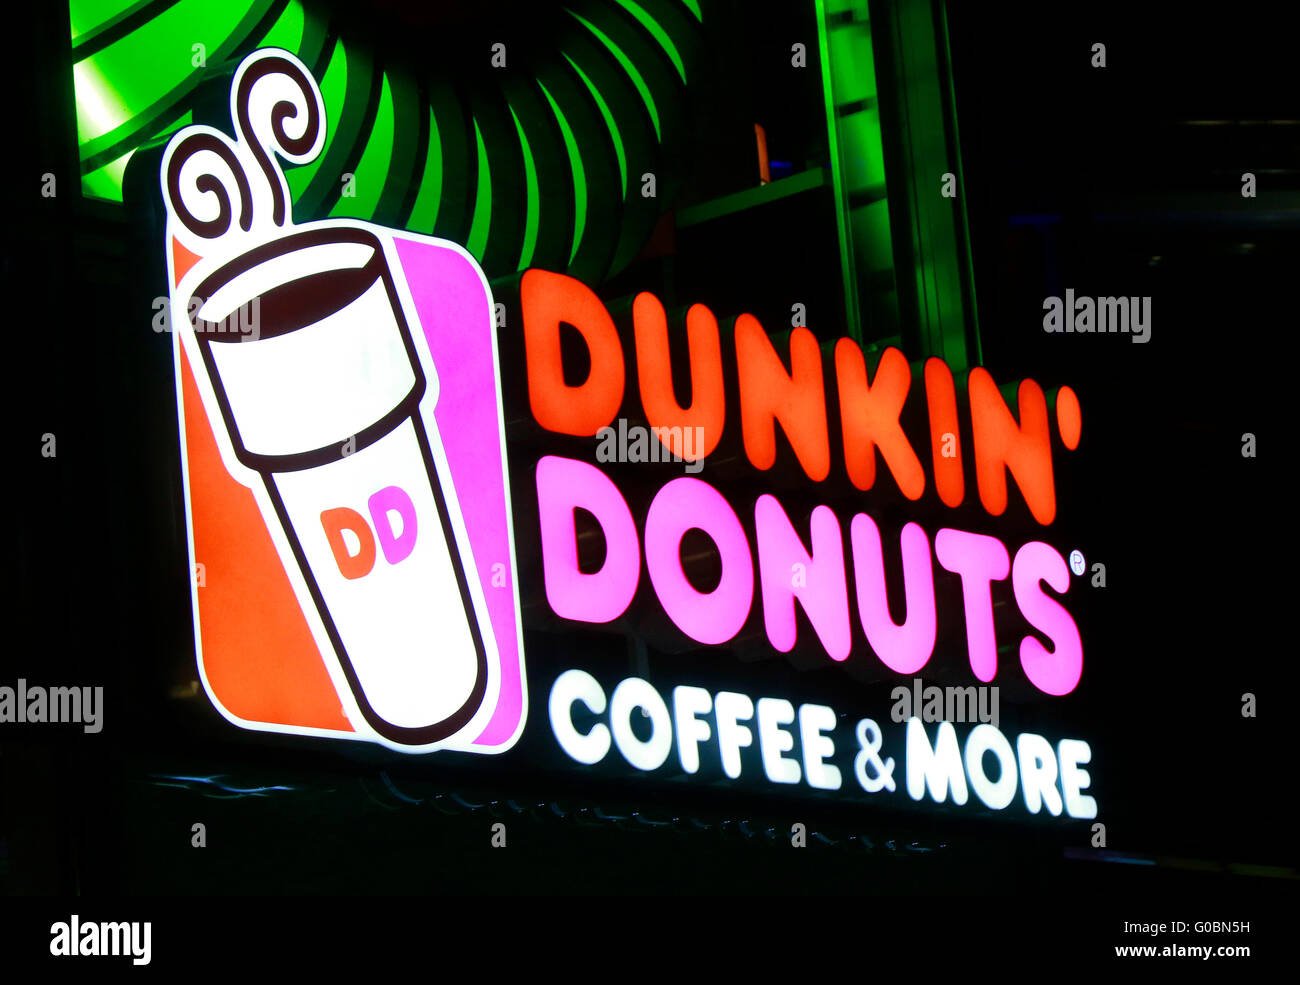 das-logo-der-marken-dunkin-donuts-berlin-G0BN5H.jpg